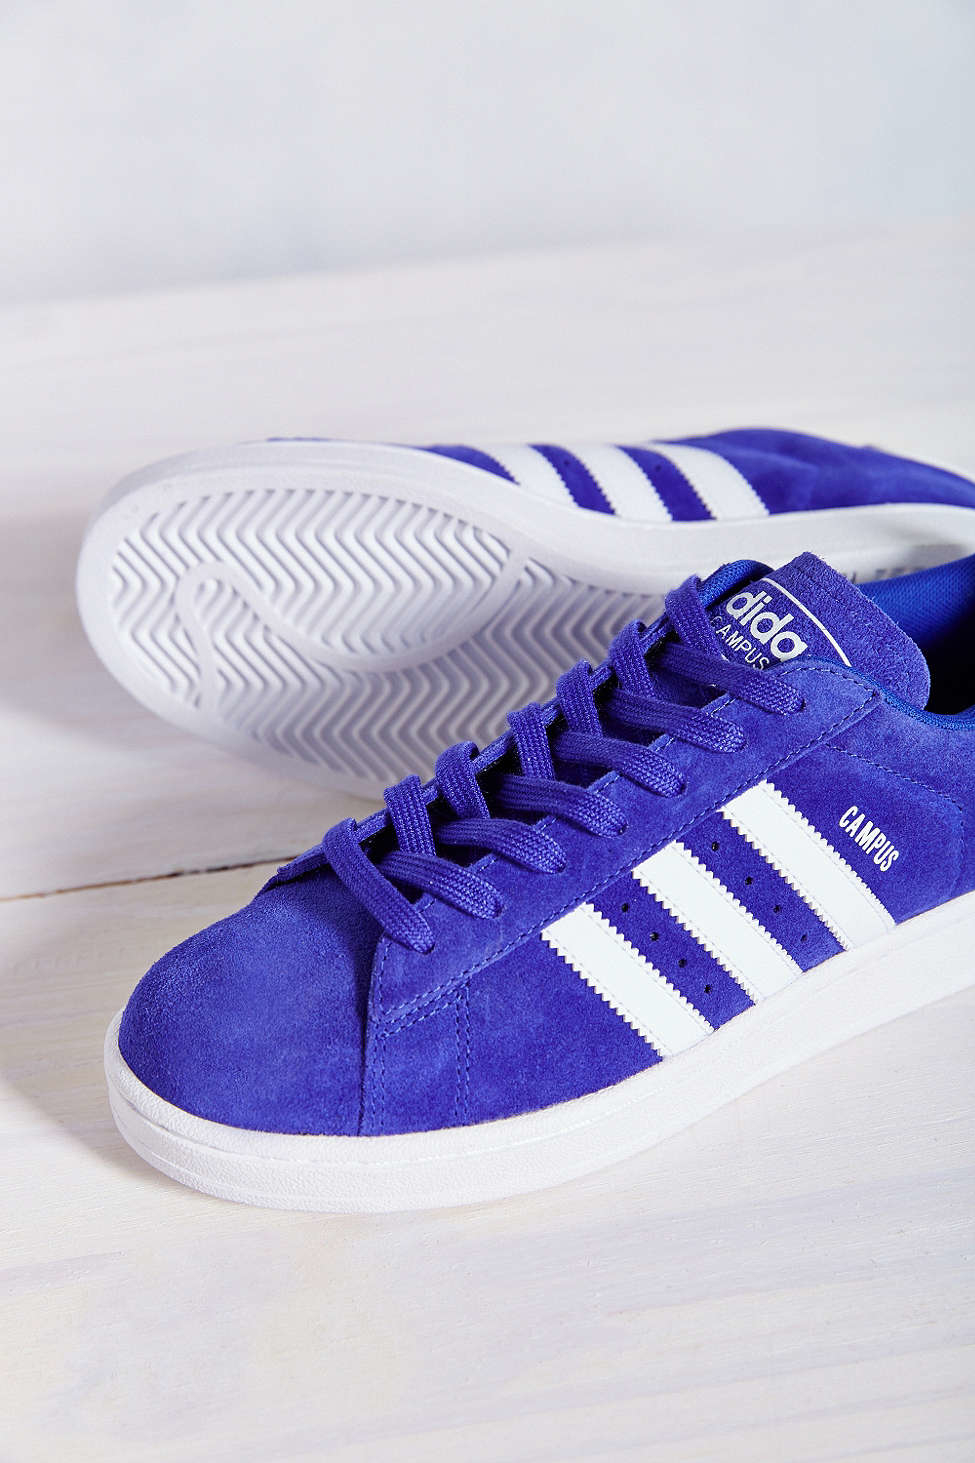 سيسي سيسي adidas Originals Campus 2 Suede Sneaker in Violet (Blue) | Lyst سيسي سيسي